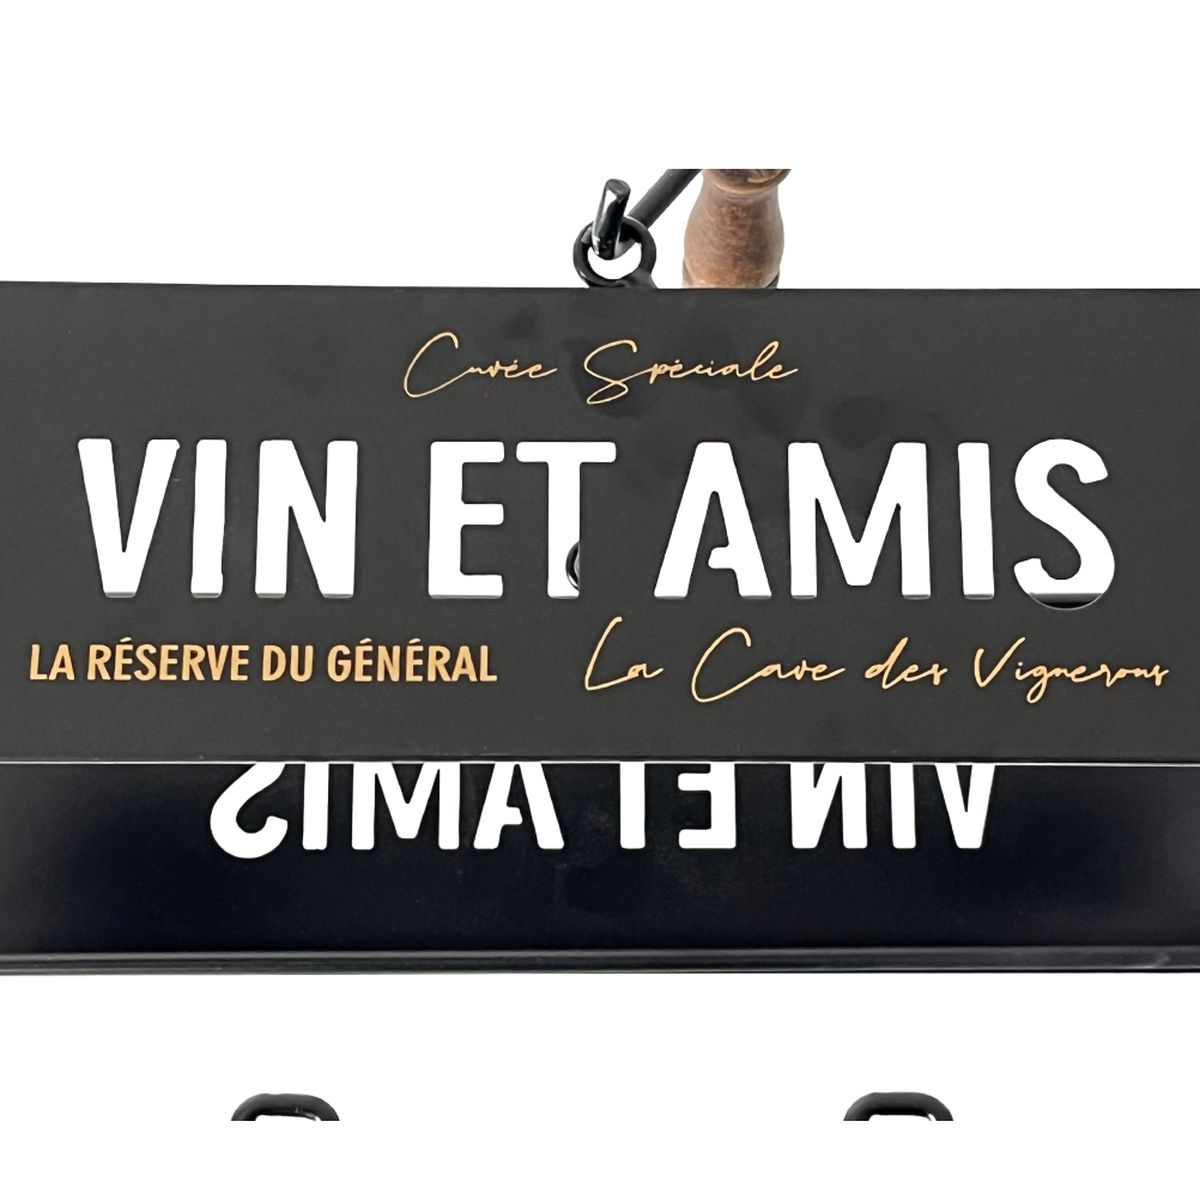 Bottle rack - Vin et Amis